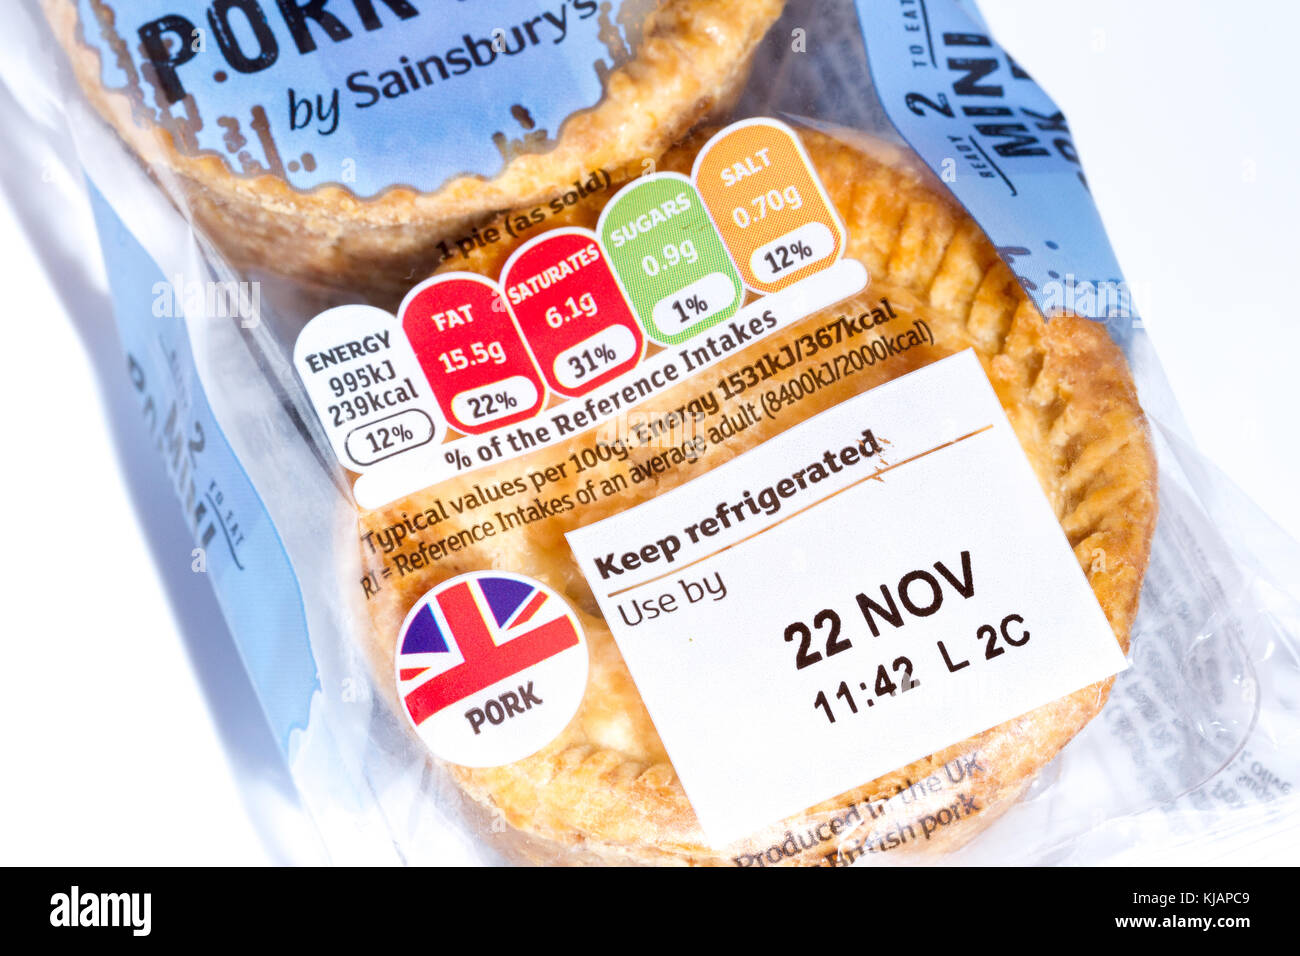 Date limite d'utilisation et l'information nutritionnelle feu système de cotation sur un paquet de Sainsbury's 2 mini tartes porc, Royaume-Uni Banque D'Images